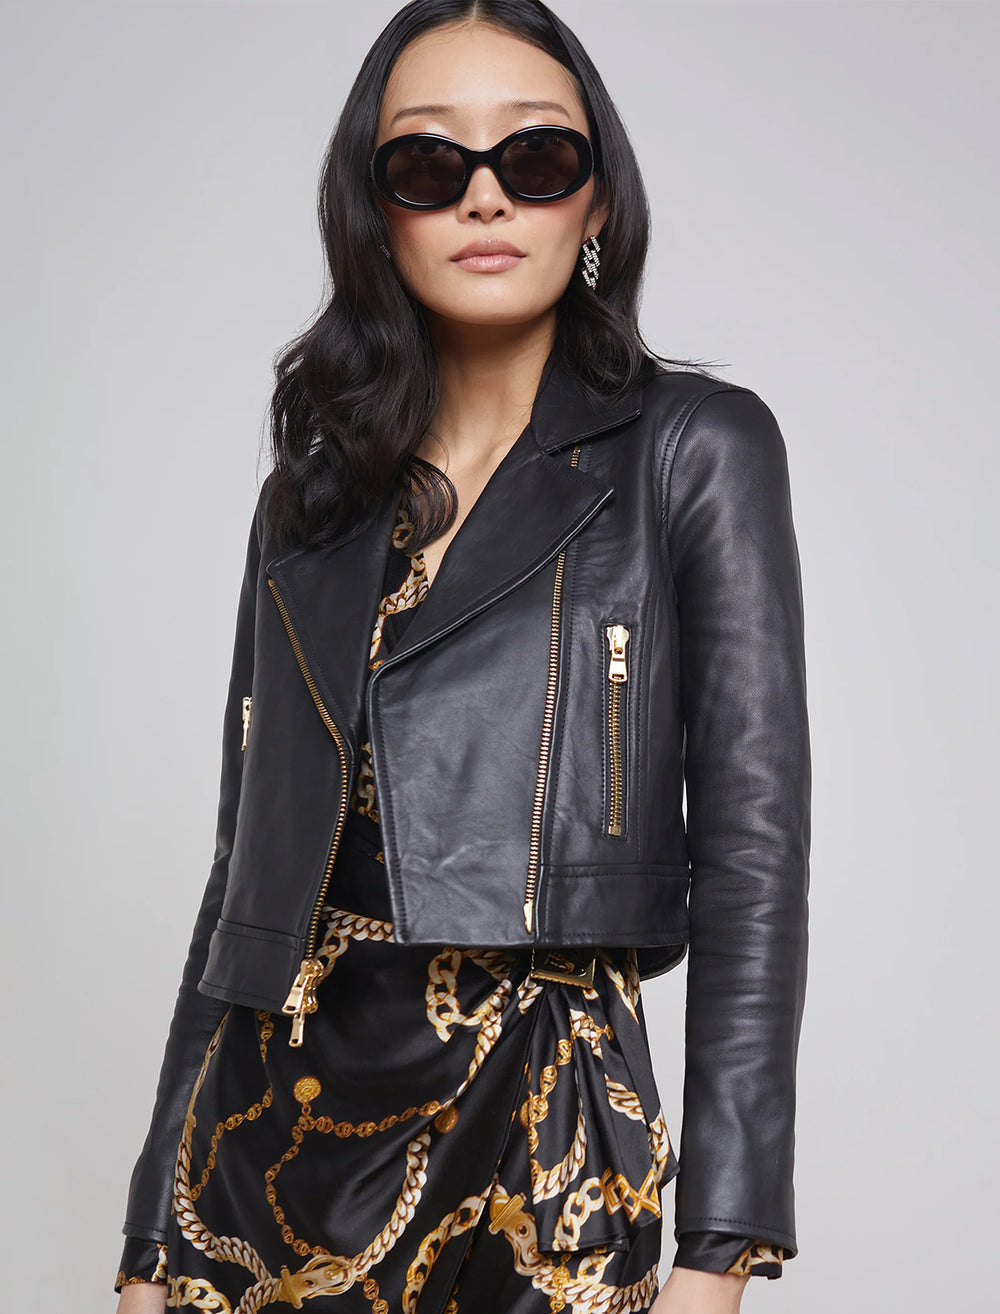 Model wearing L'agence's onna cropped biker jacket in black.